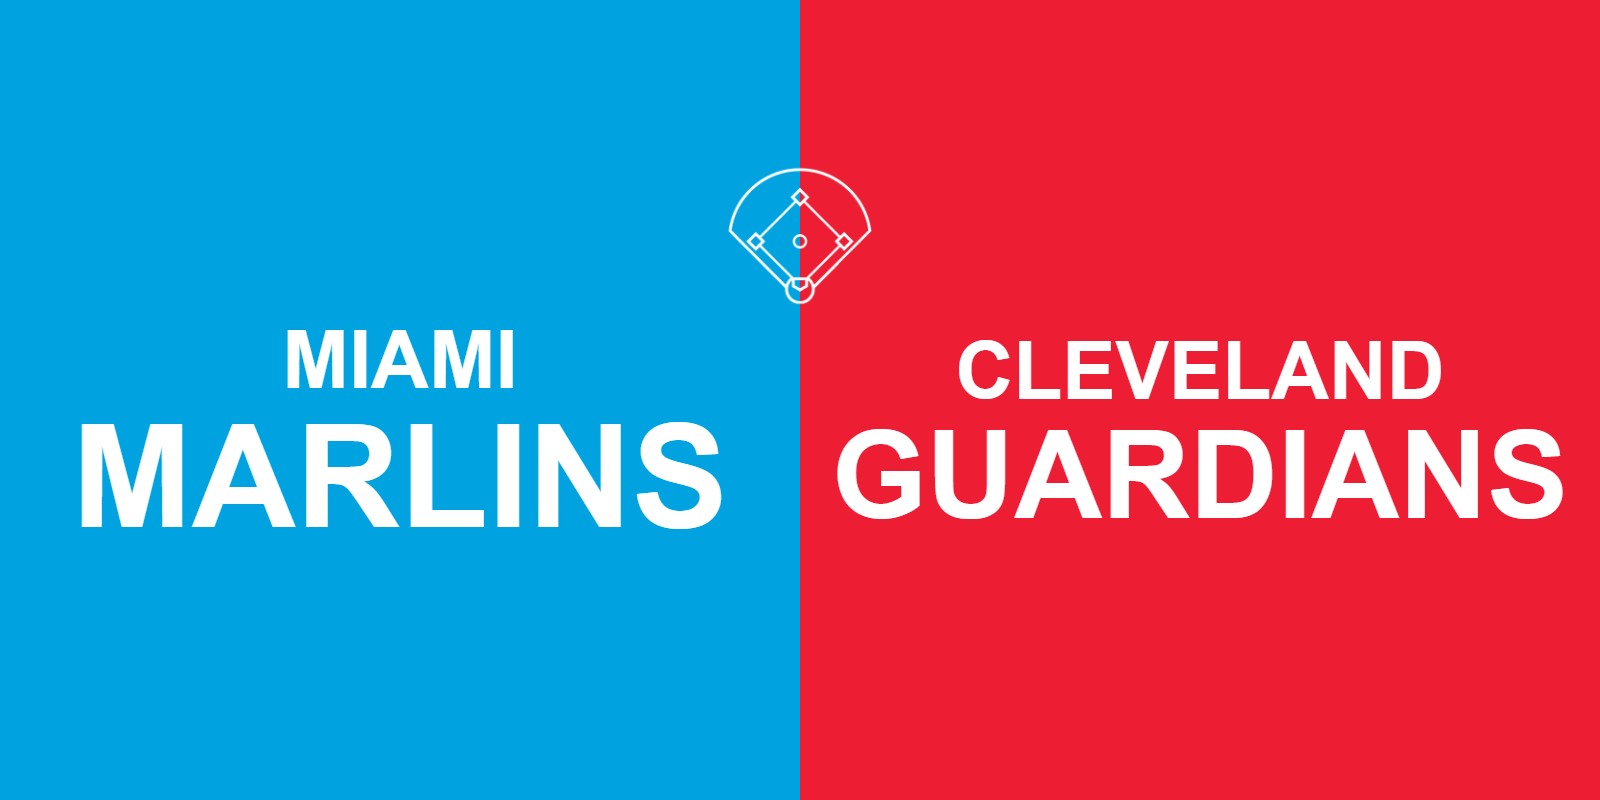 Marlins vs Guardians